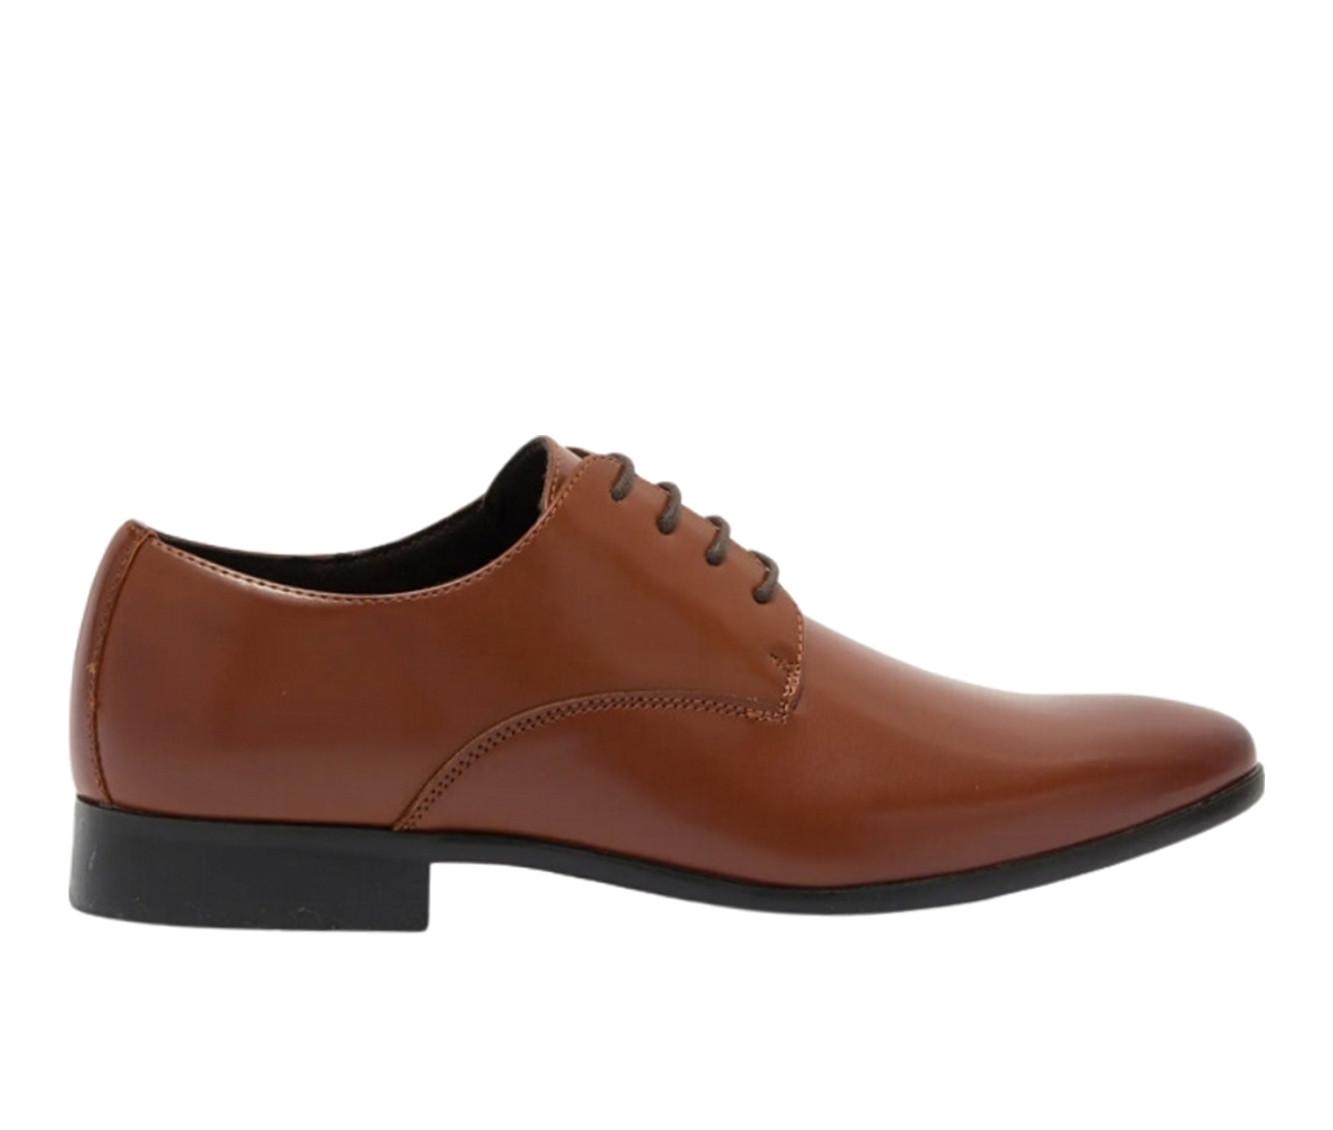 Men's RUSH Gordon Rush Plain Toe Oxford Dress Shoes